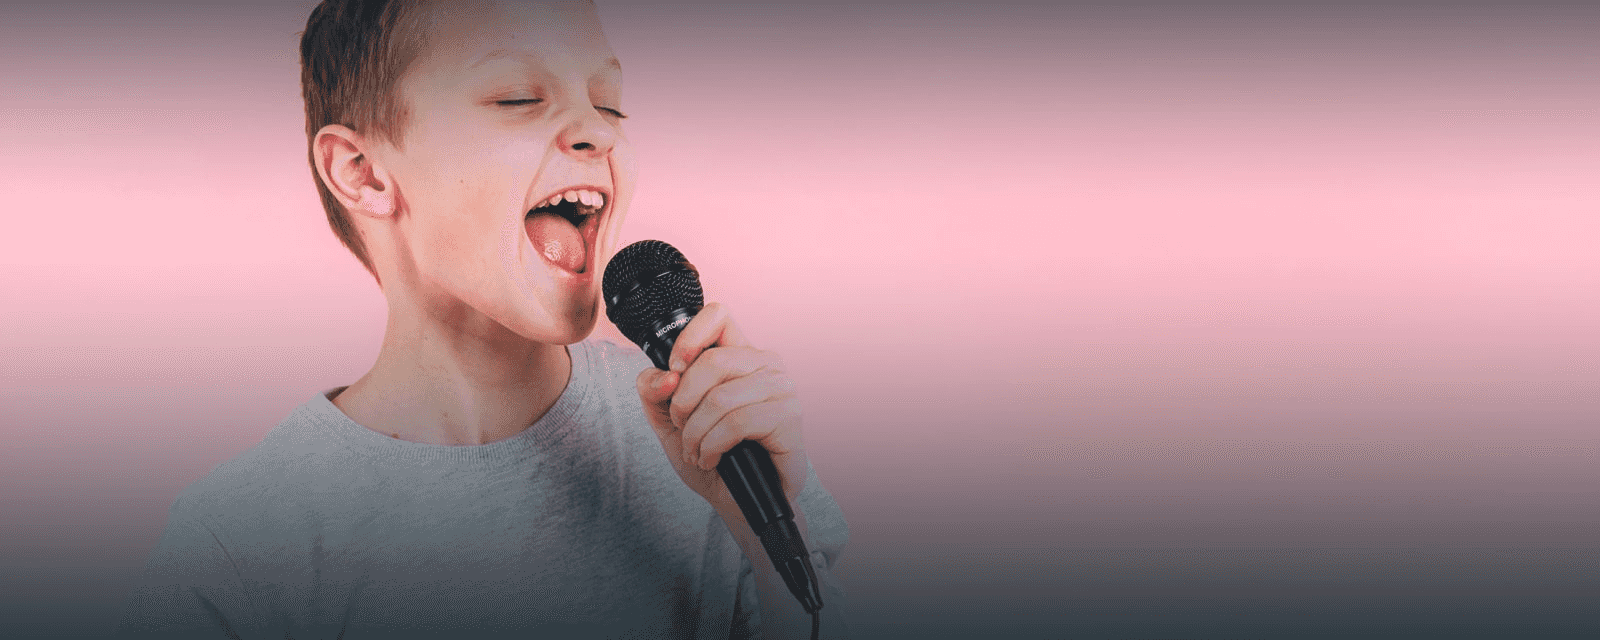 Gesangsunterricht für Kinder - Vokaltechnik und Stimmbildung
 
